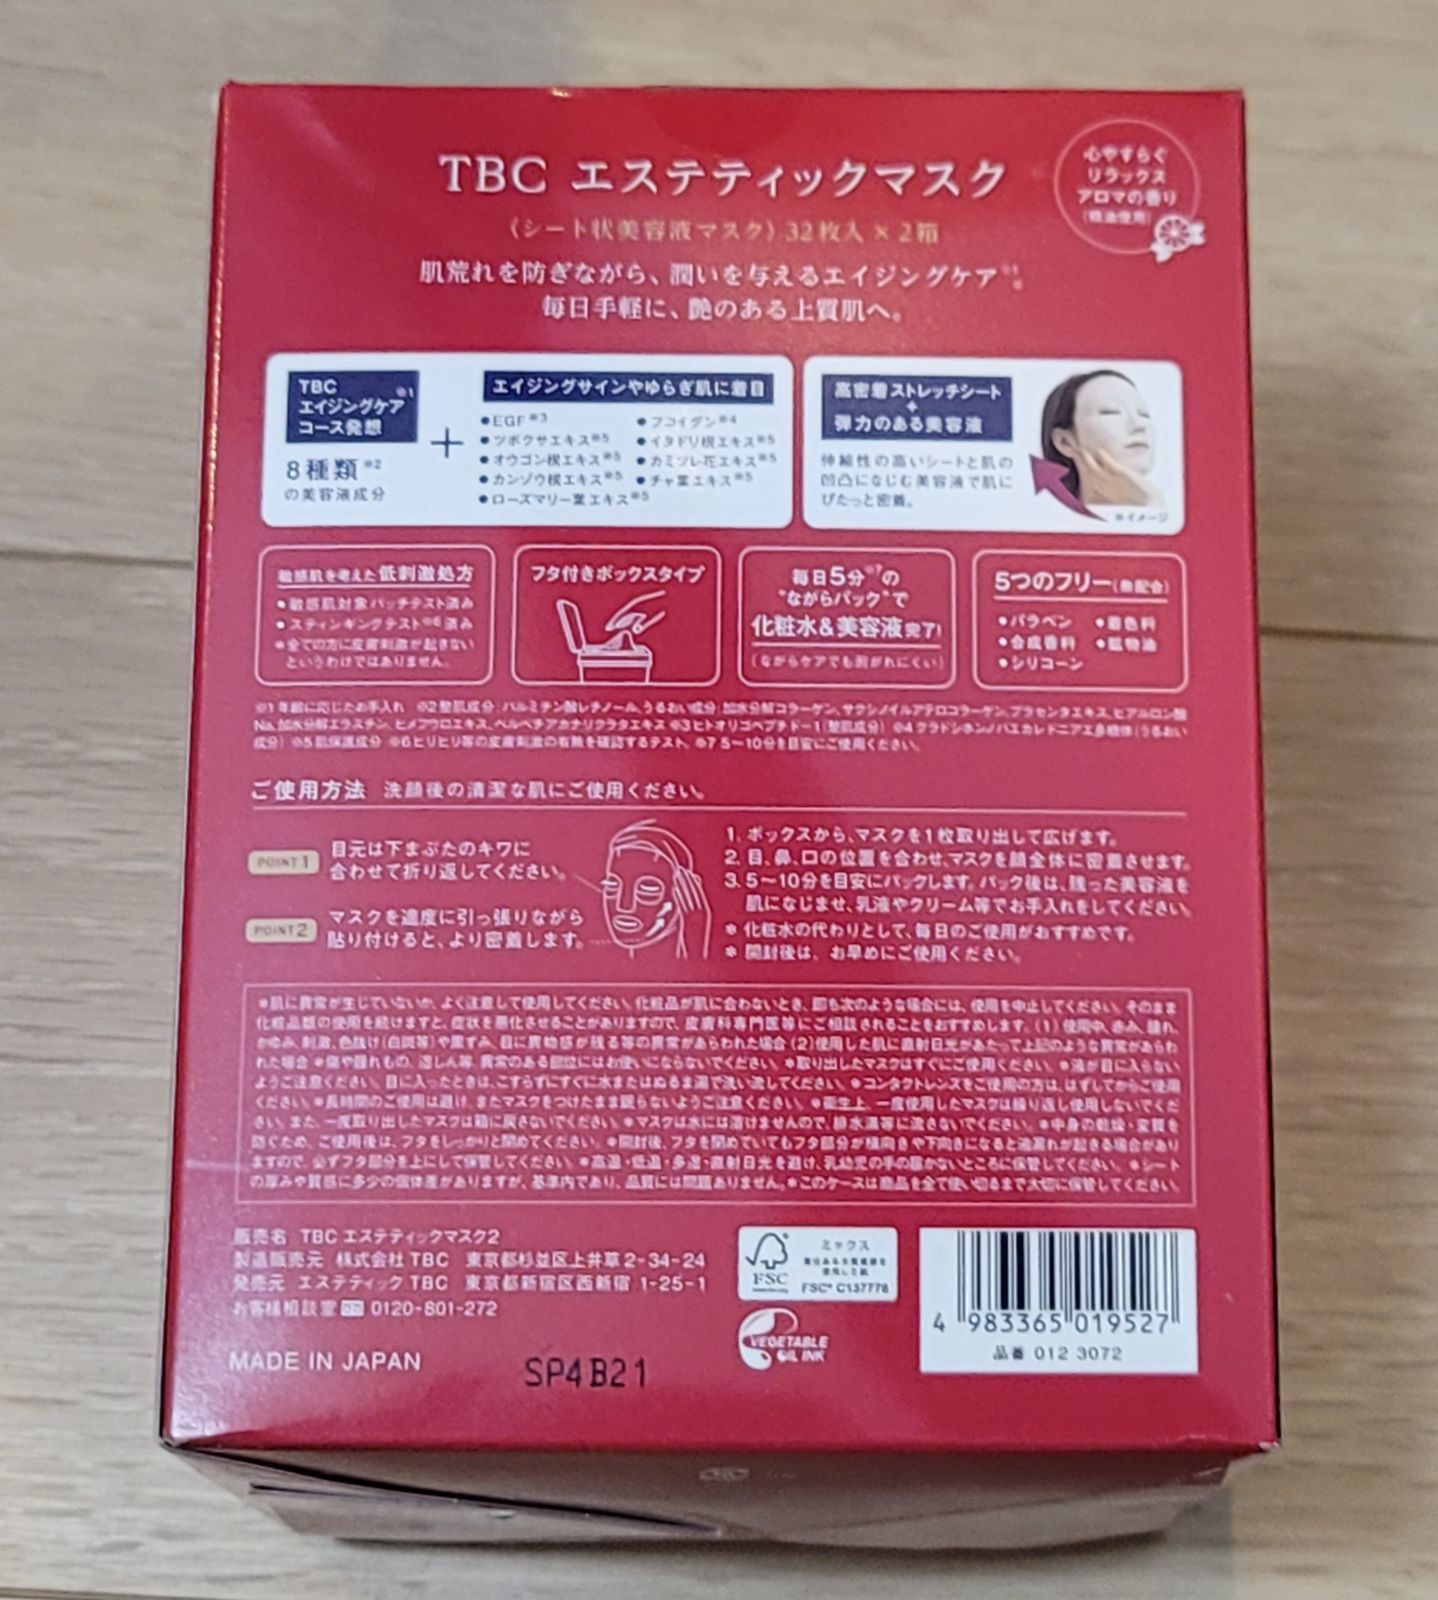 TBC エステティックマスク 1箱(32枚入×2箱) - ケンキンショップ - メルカリ